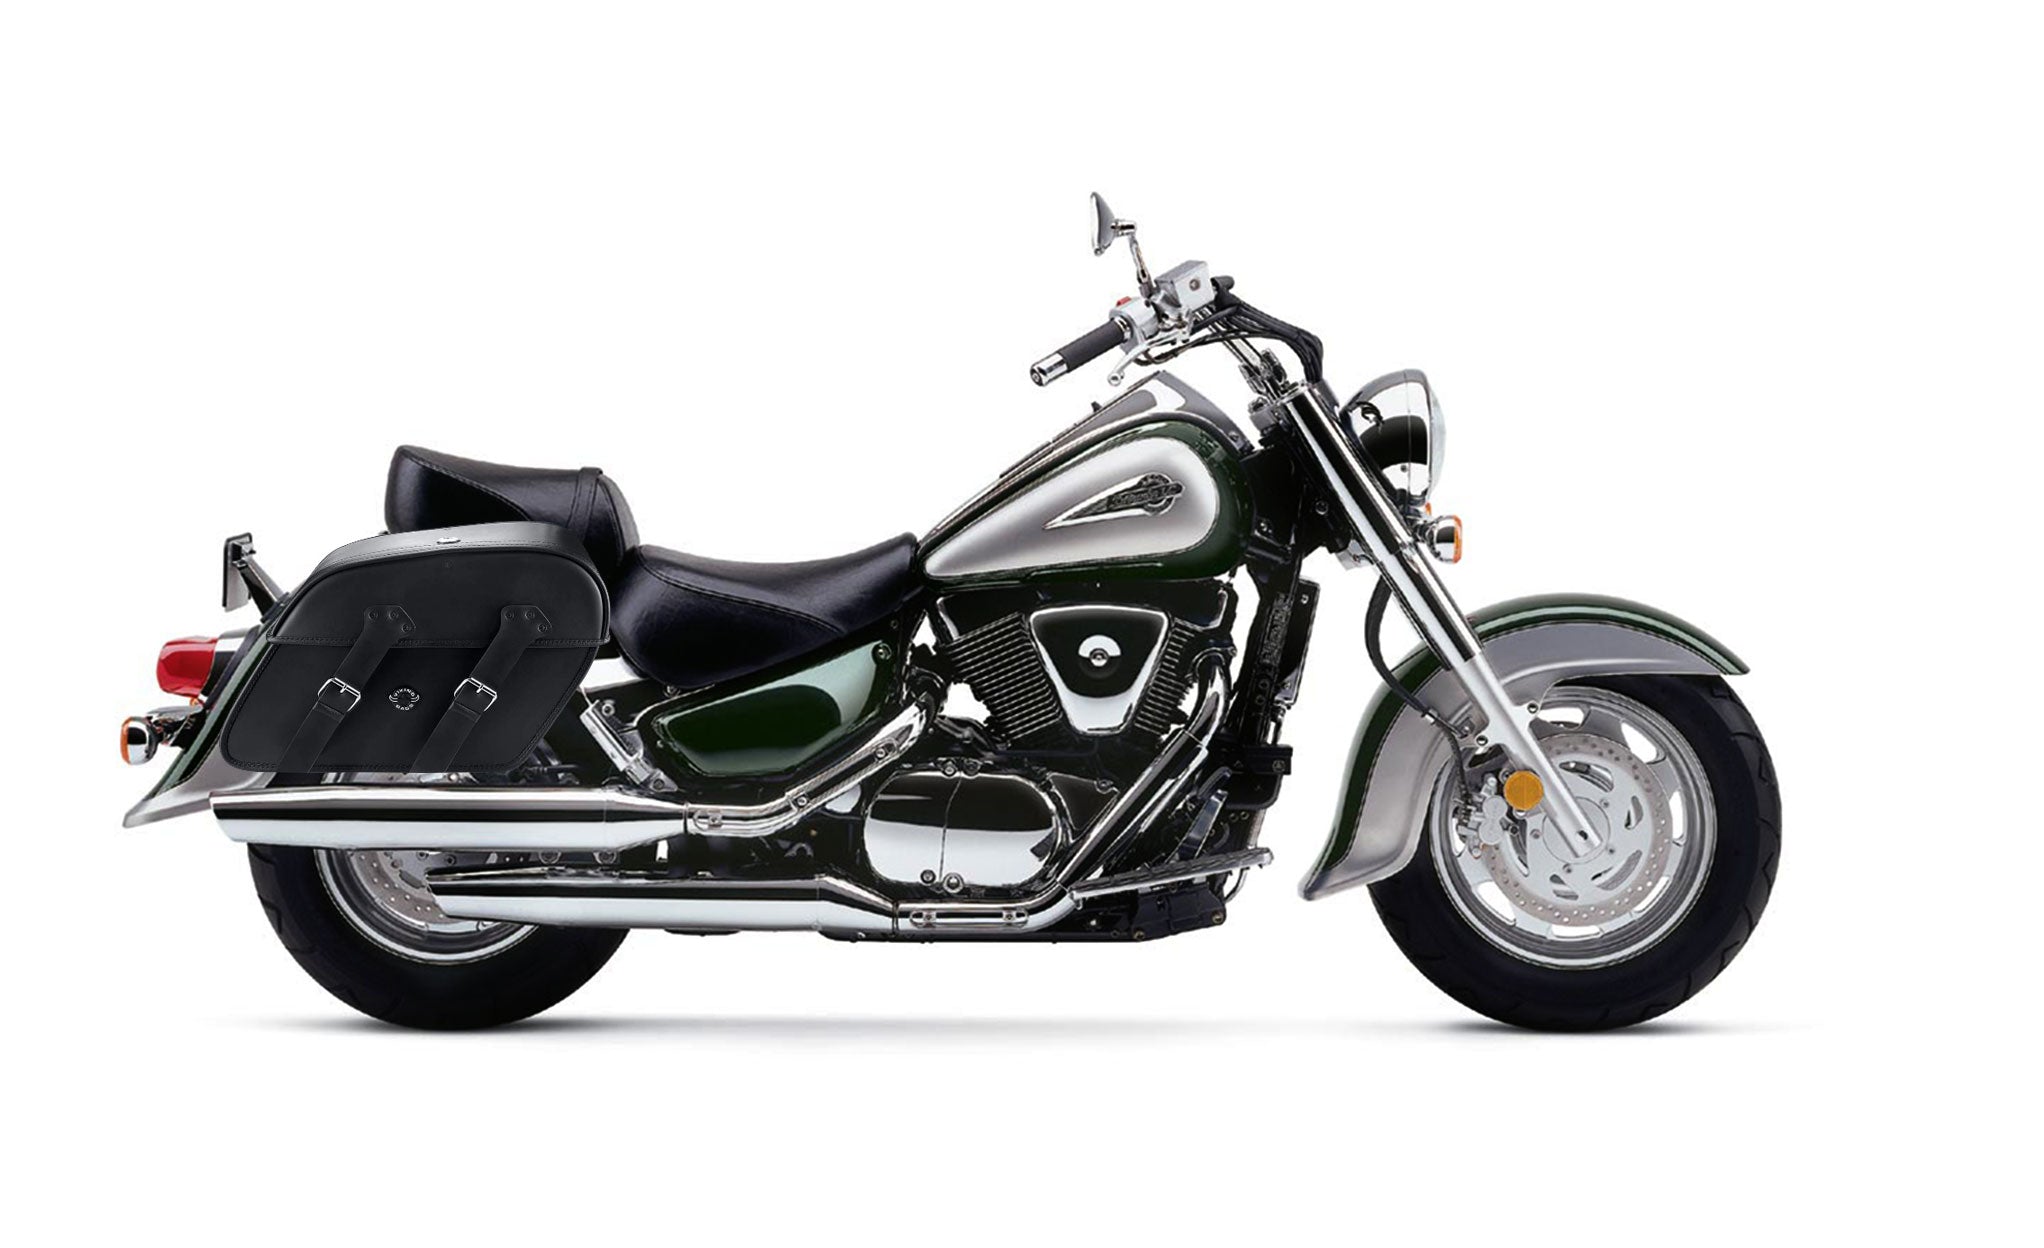 Viking Raven Extra Large Suzuki Intruder 1500 Vl1500 Leather Motorcycle Saddlebags on Bike Photo @expand